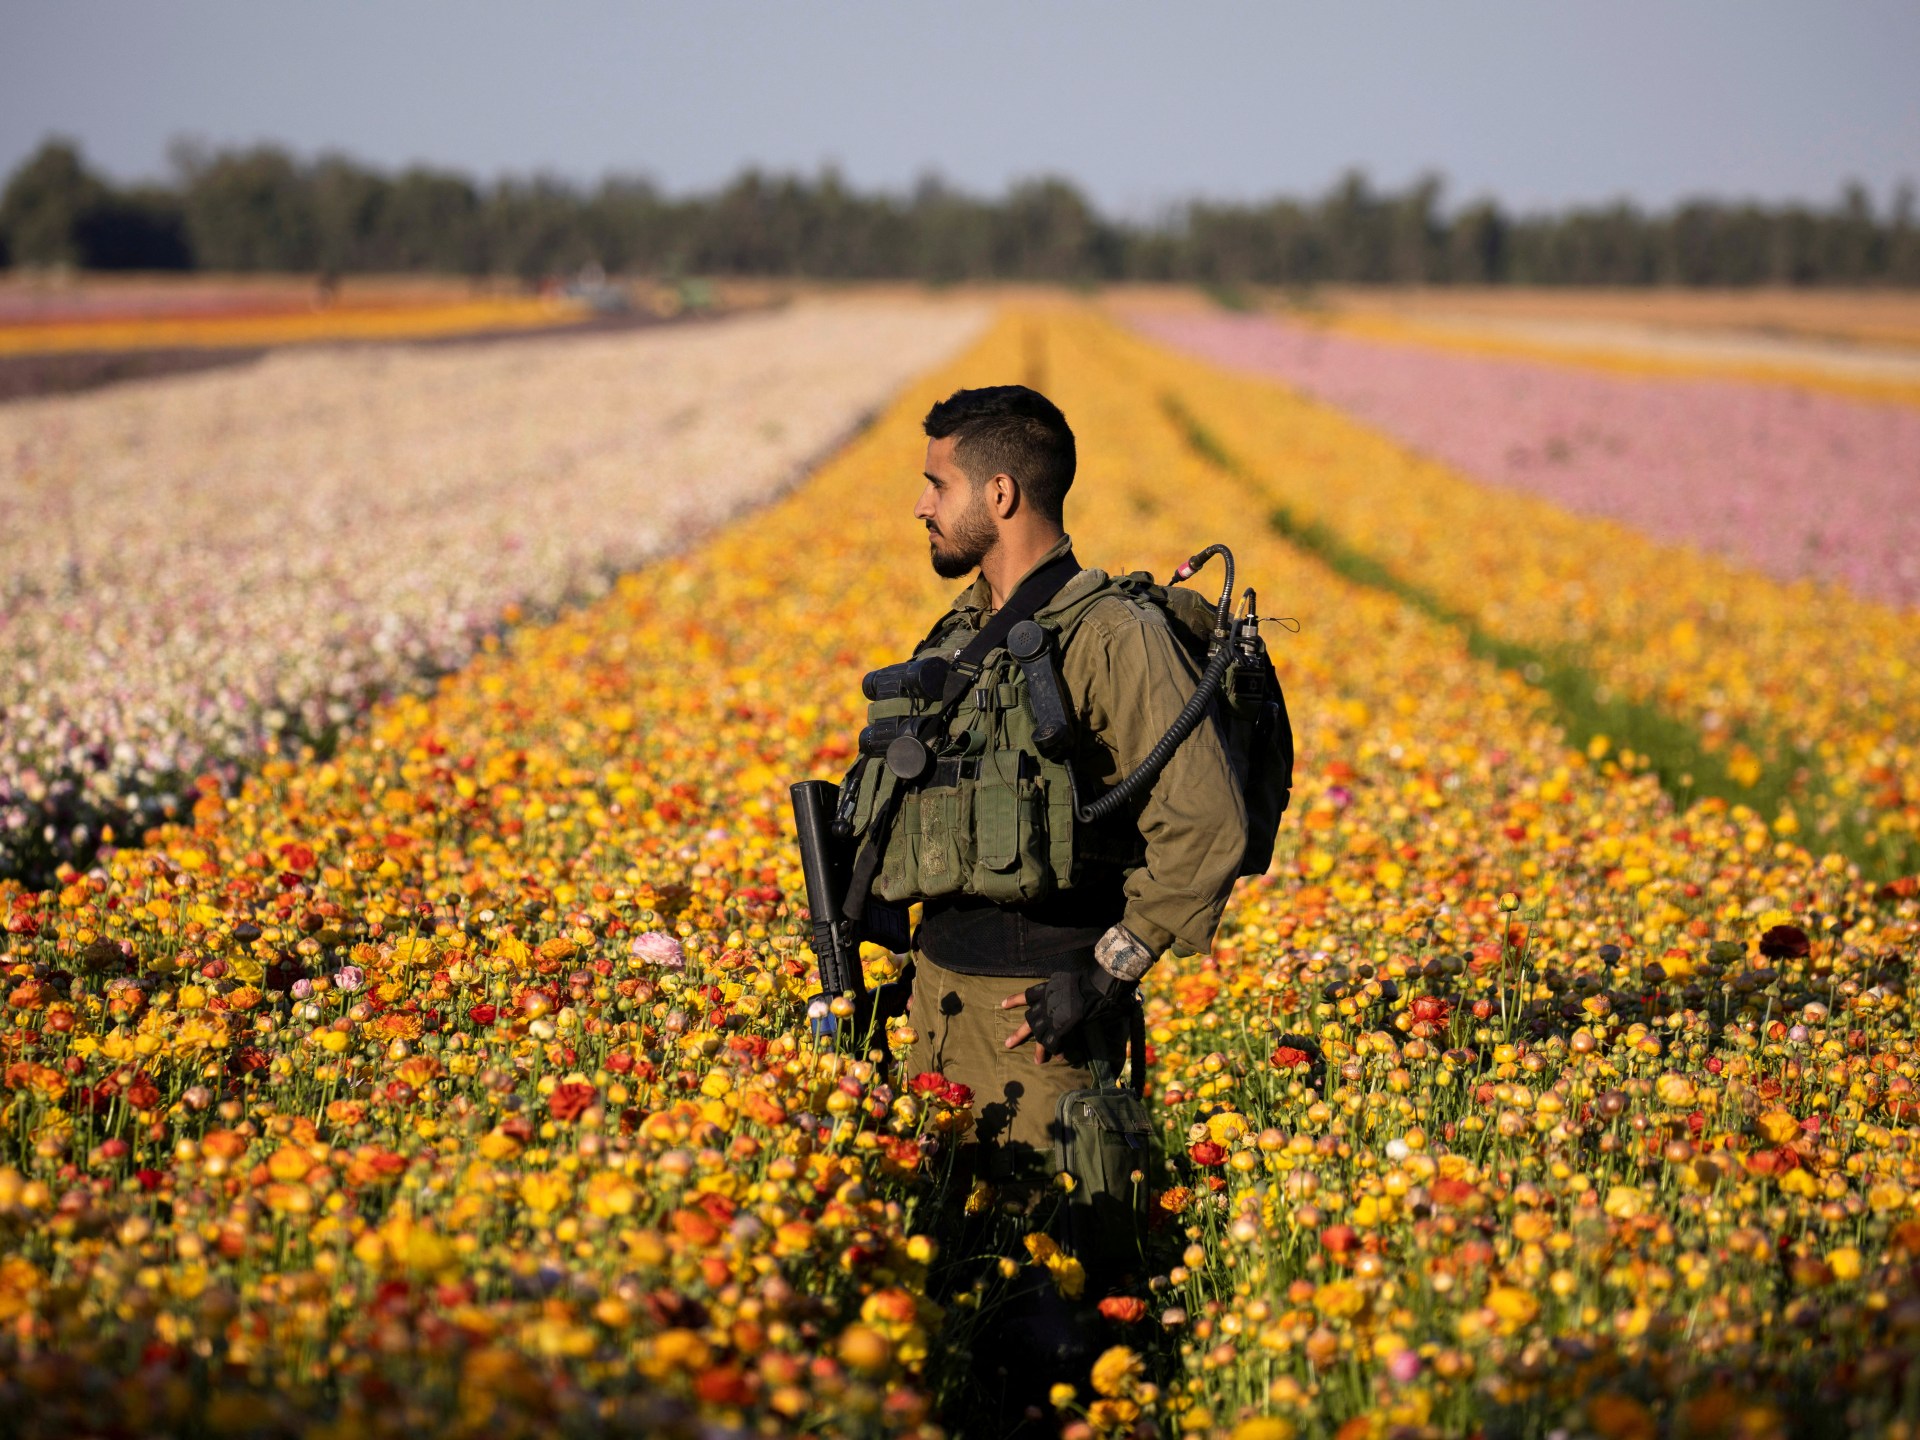 تقرير: 75% من محاصيل إسرائيل مصدرها مزارع غلاف غزة | اقتصاد – البوكس نيوز